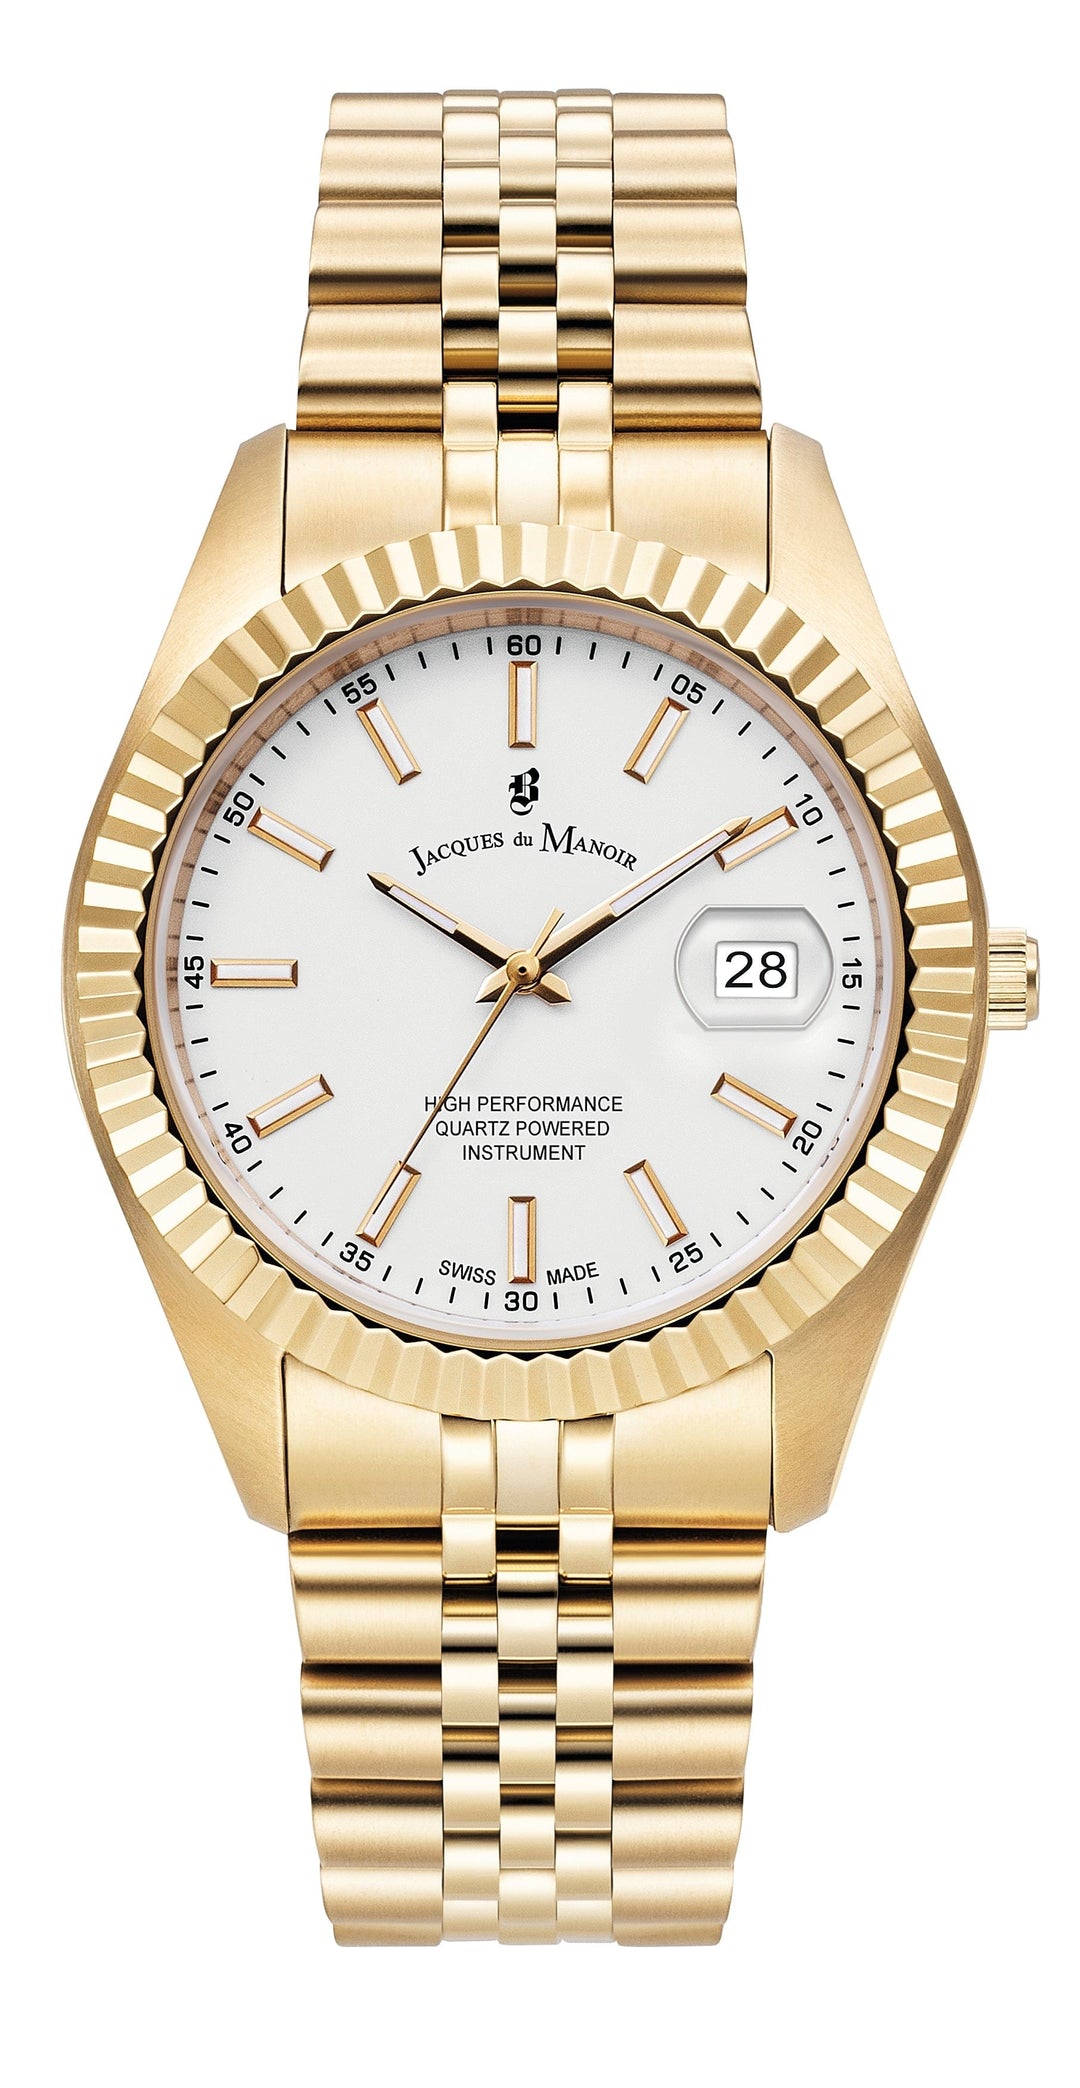 Jacques du Manoir Watch Jacques du Manoir Inspiration Business Date 40mm Men's Gold Watch Brand